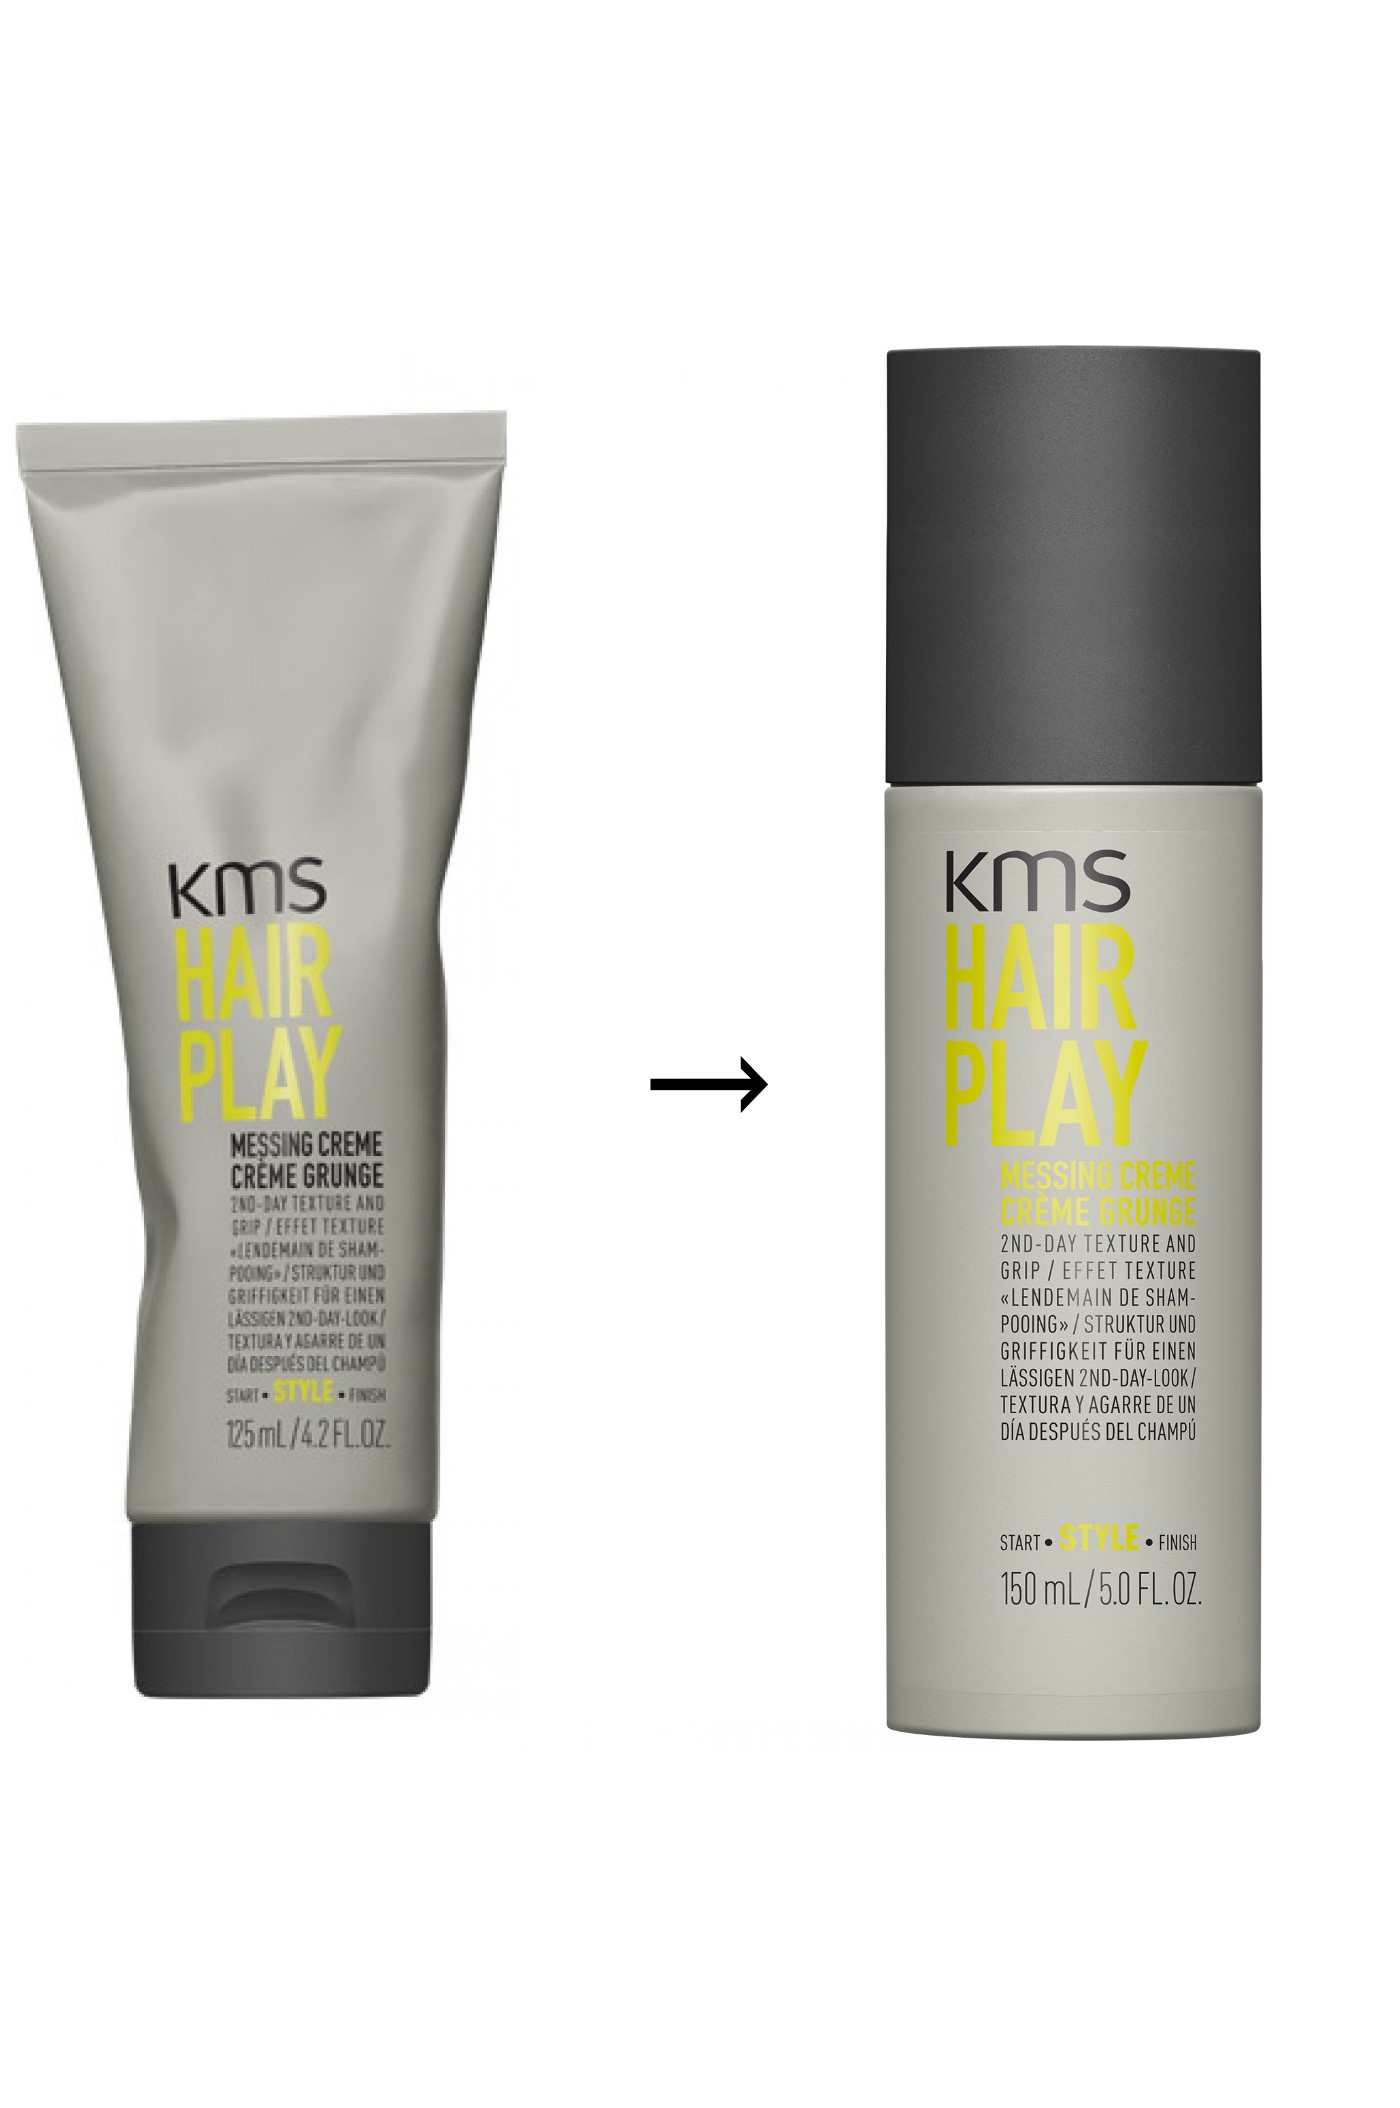 KMS HairPlay Messing Creme 150ml - Neue Version!